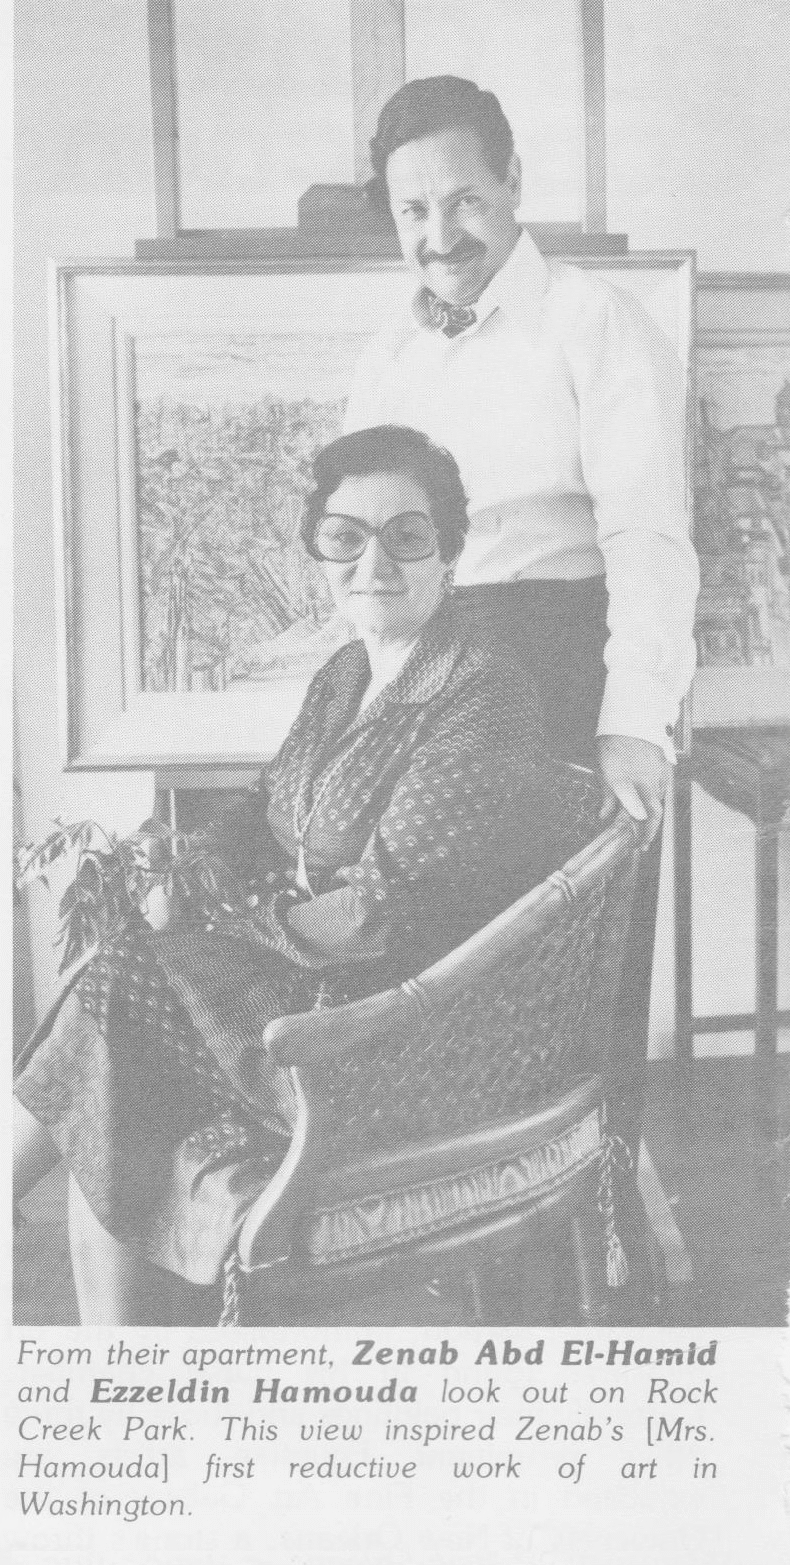 Ezzedin Hamouda and Zeinab Abd El Hamid